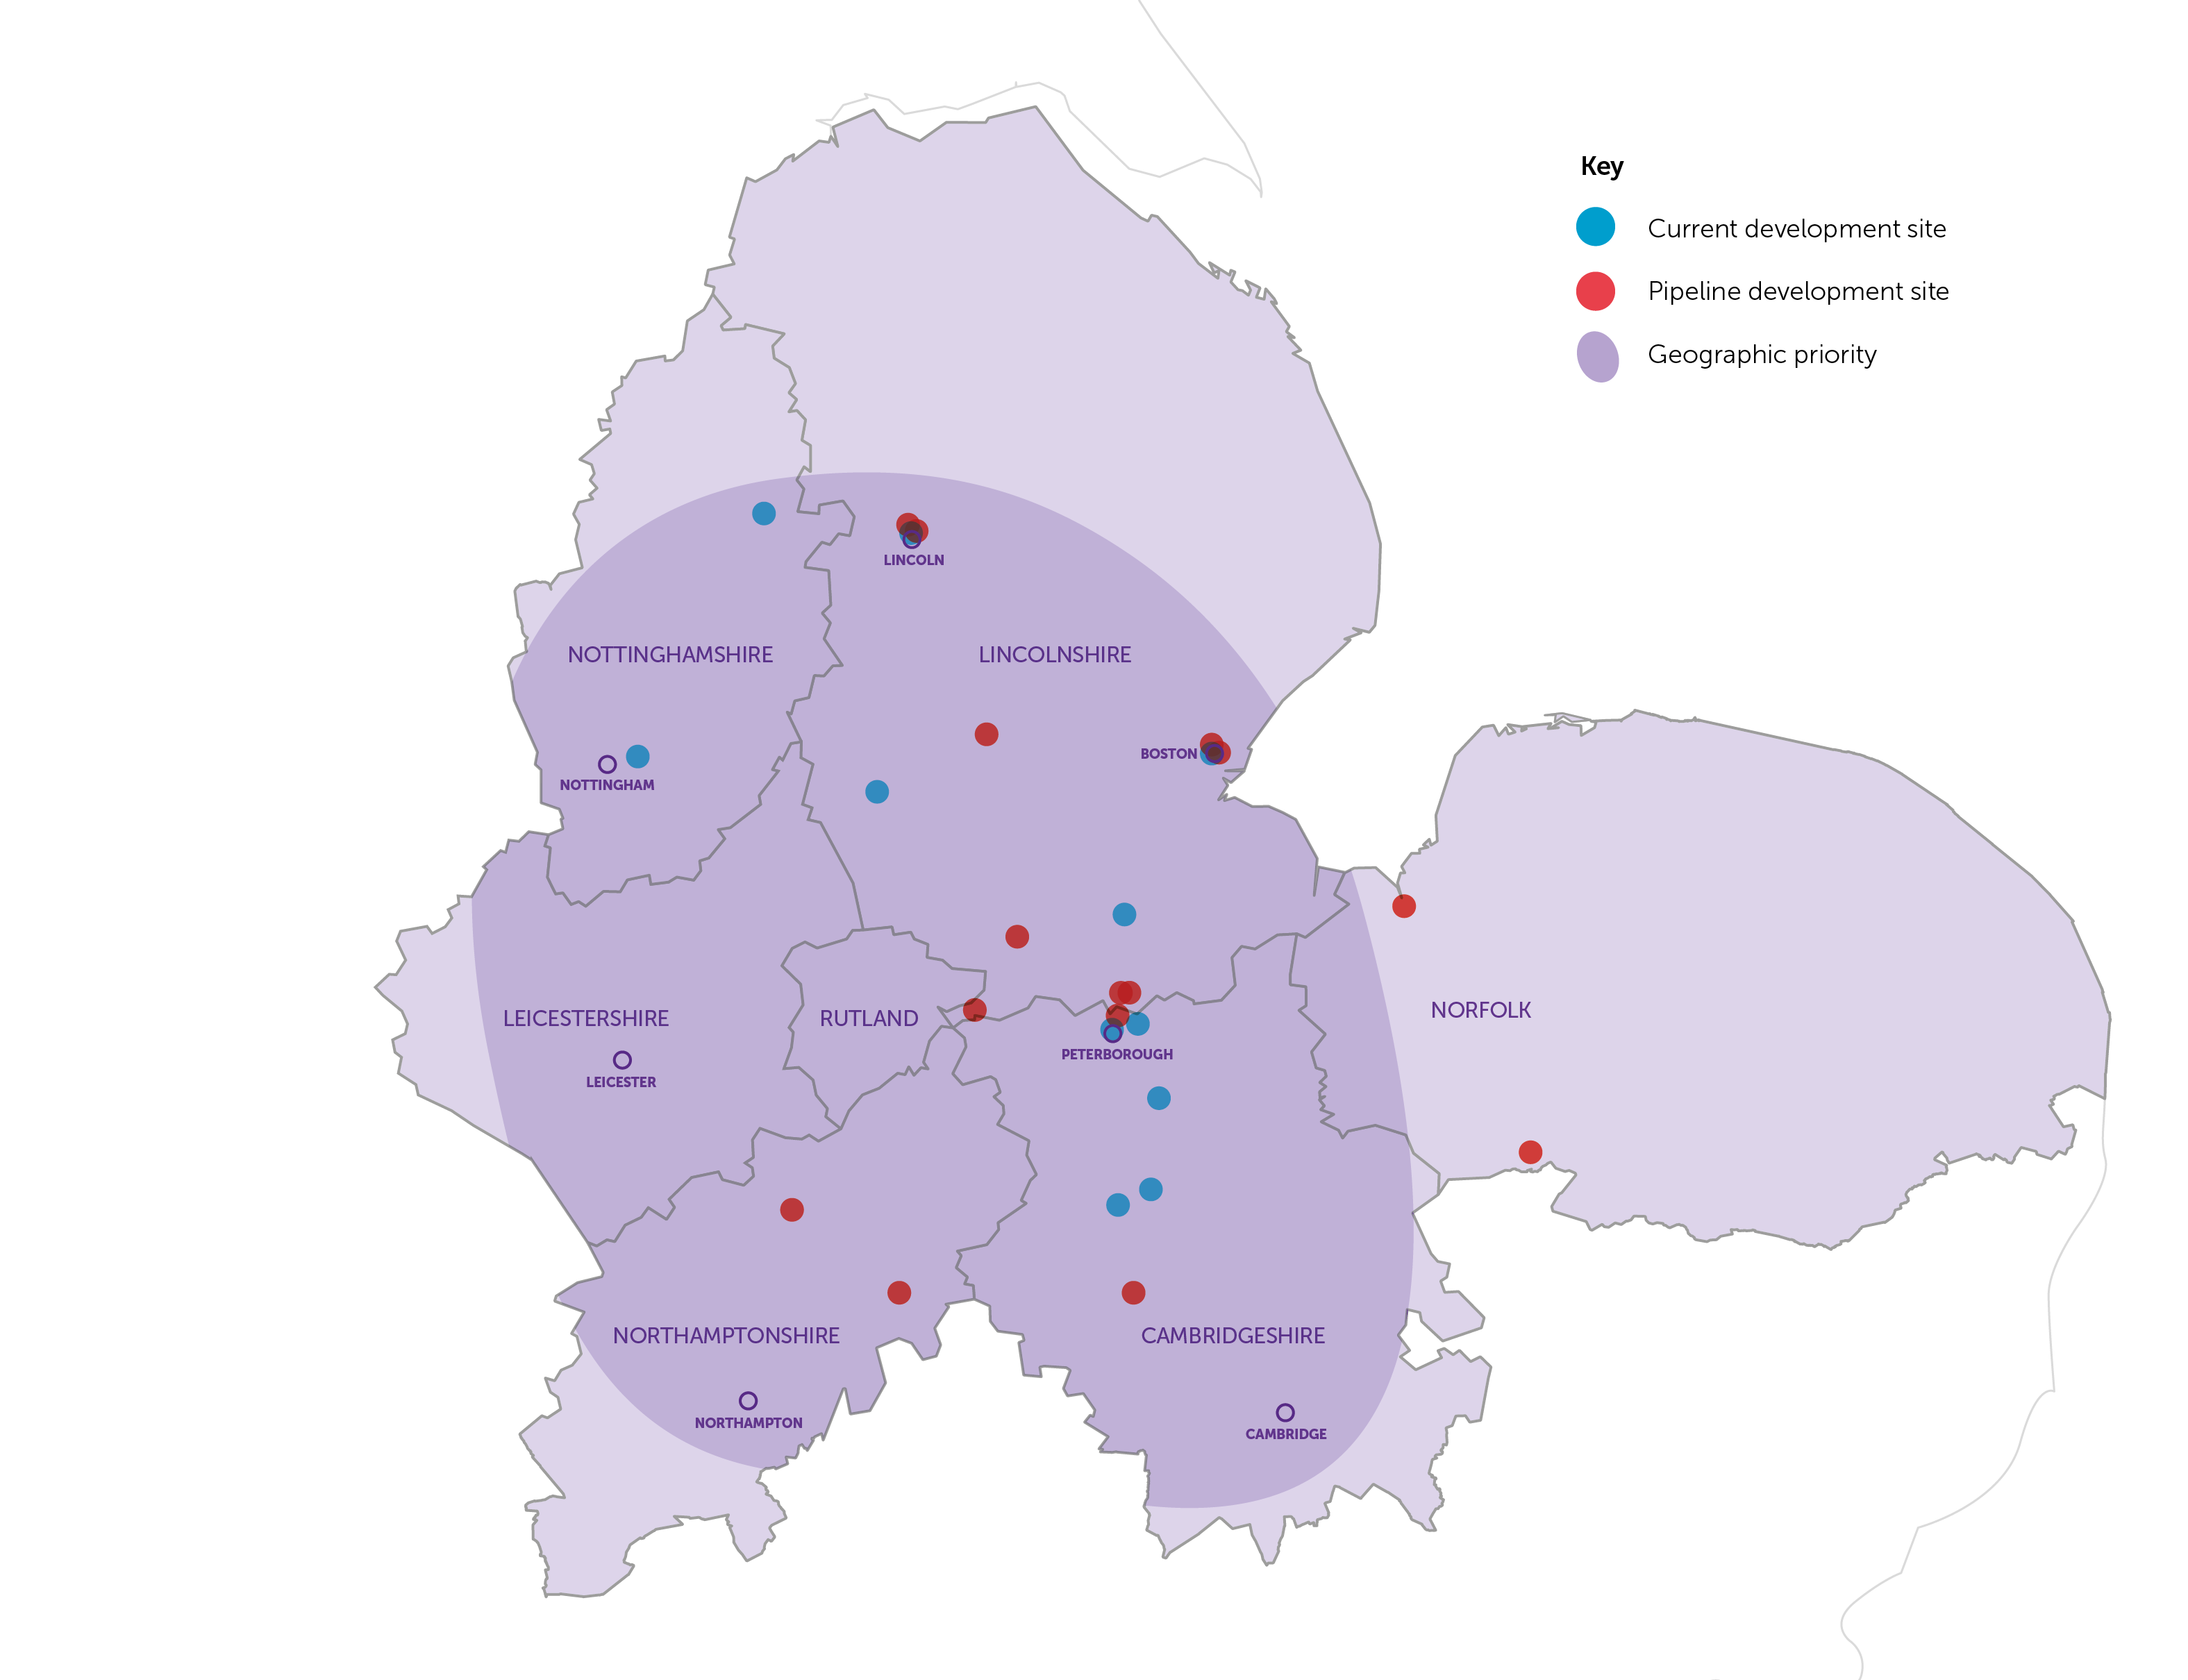 Longhurst Group's areas of key focus for development